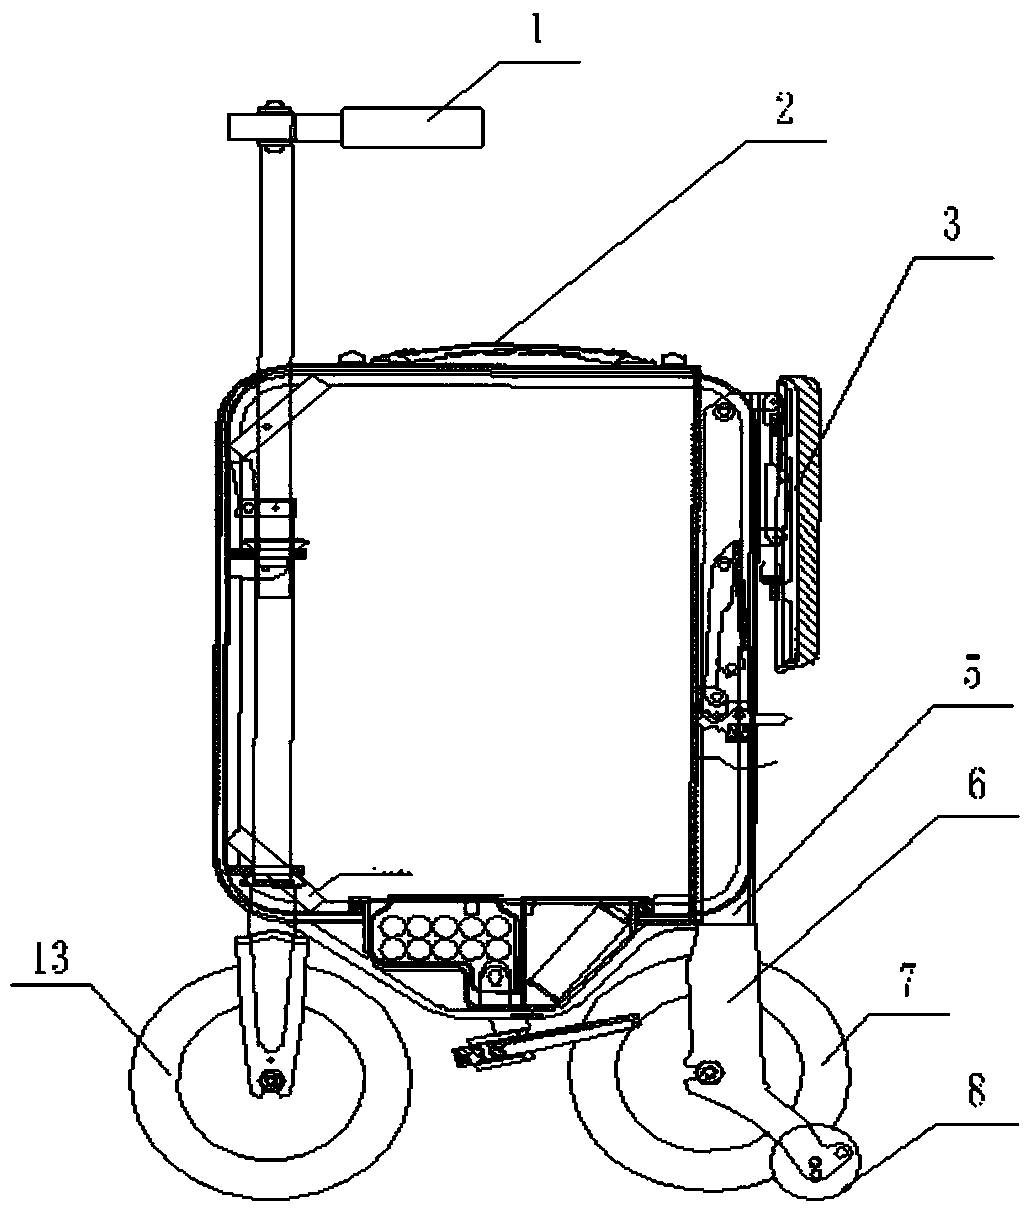 Rectangular hard-shell suitcase electric vehicle